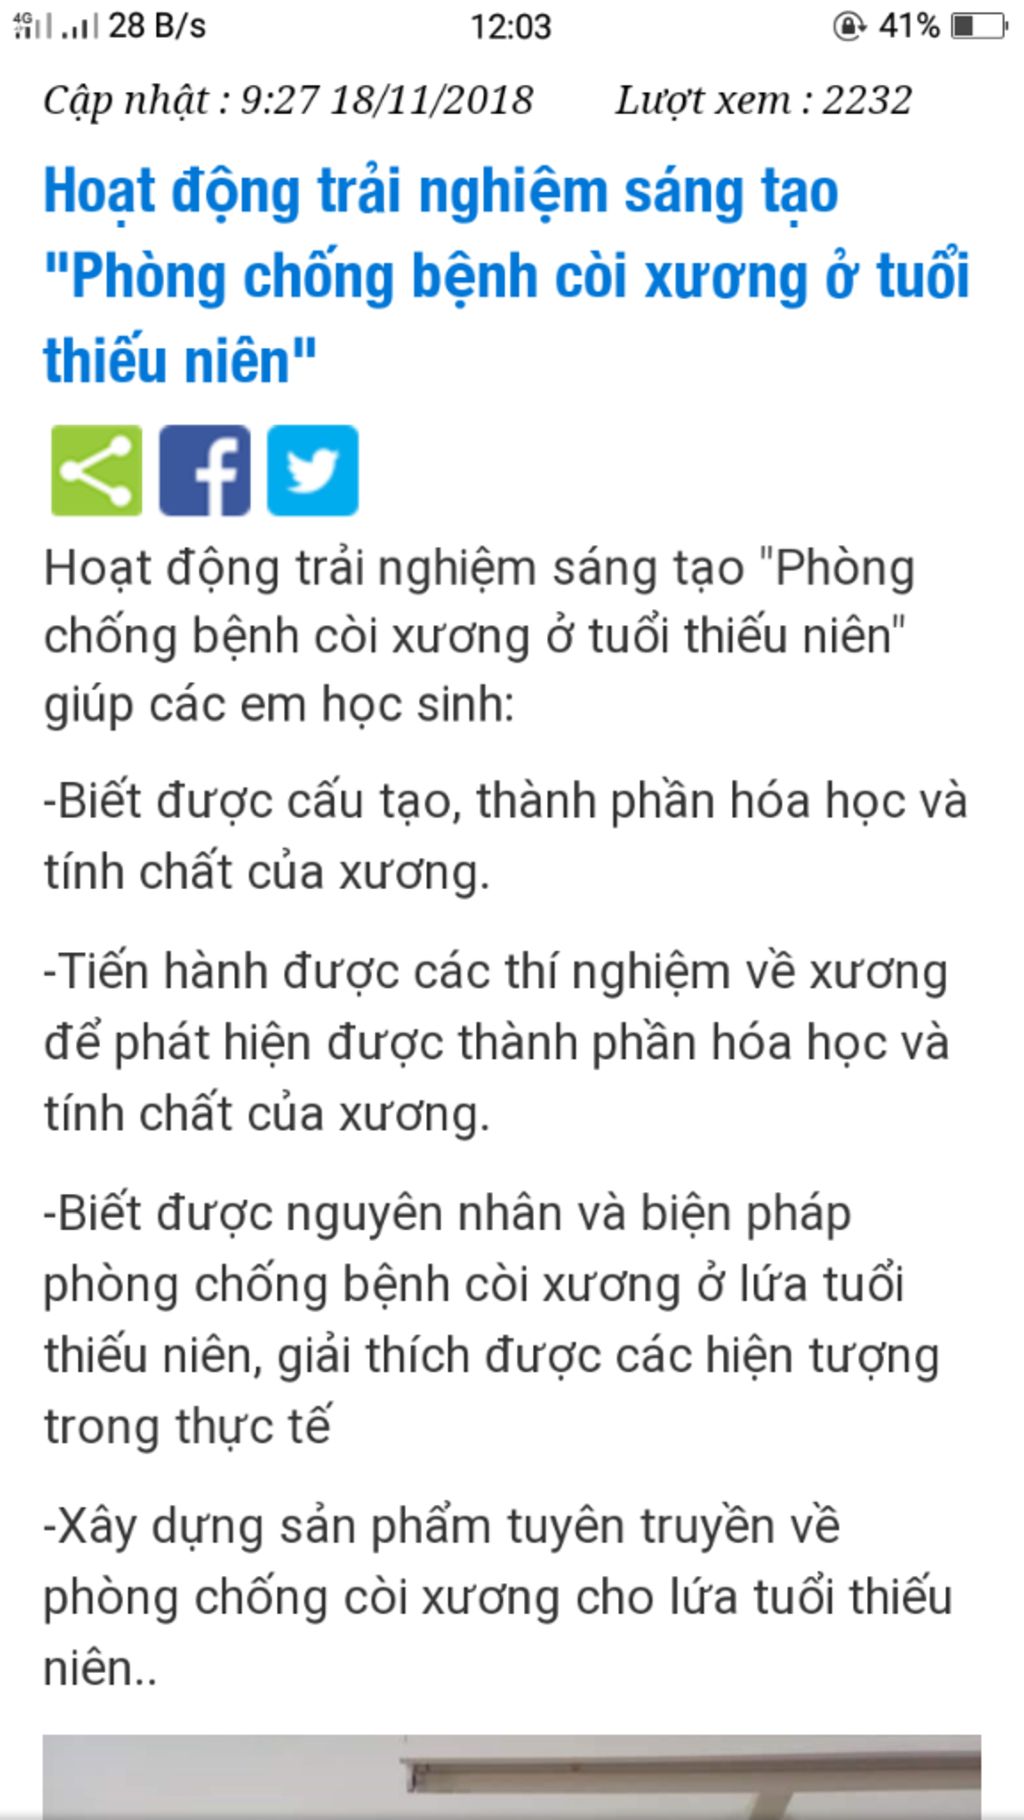 trai-nghiem-sang-tao-sinh-hoc-8-chu-de-phong-chong-coi-uong-o-tuoi-thieu-nien